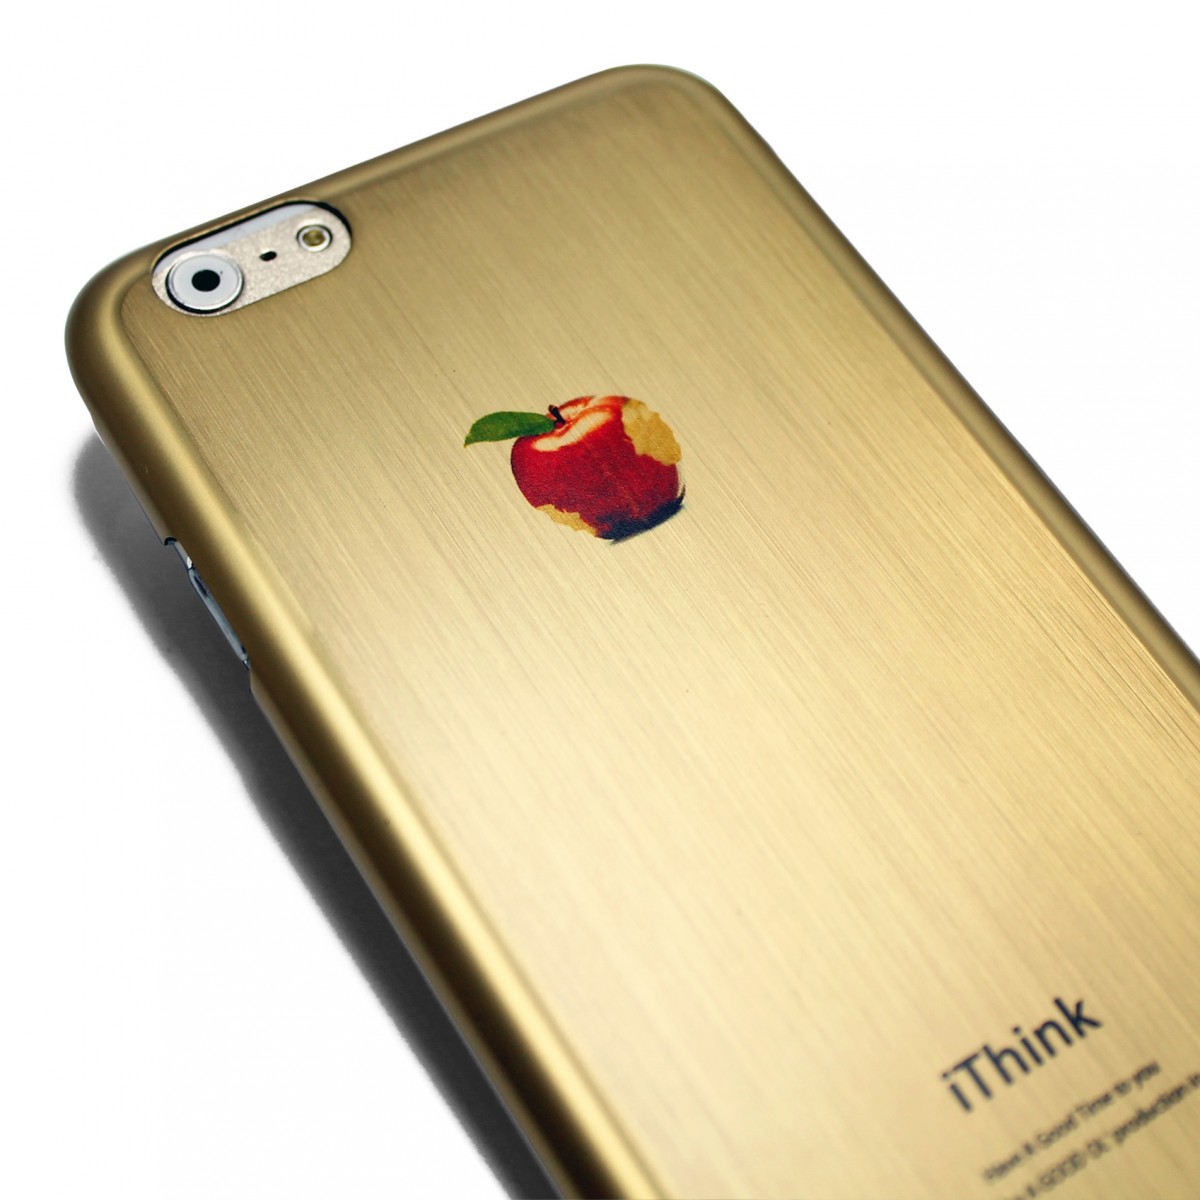 Iphone6 Iphone6sケース 4 7寸 合金チタンケースiphoneカバー マットゴールド リンゴ Iichi ハンドメイド クラフト作品 手仕事品の通販